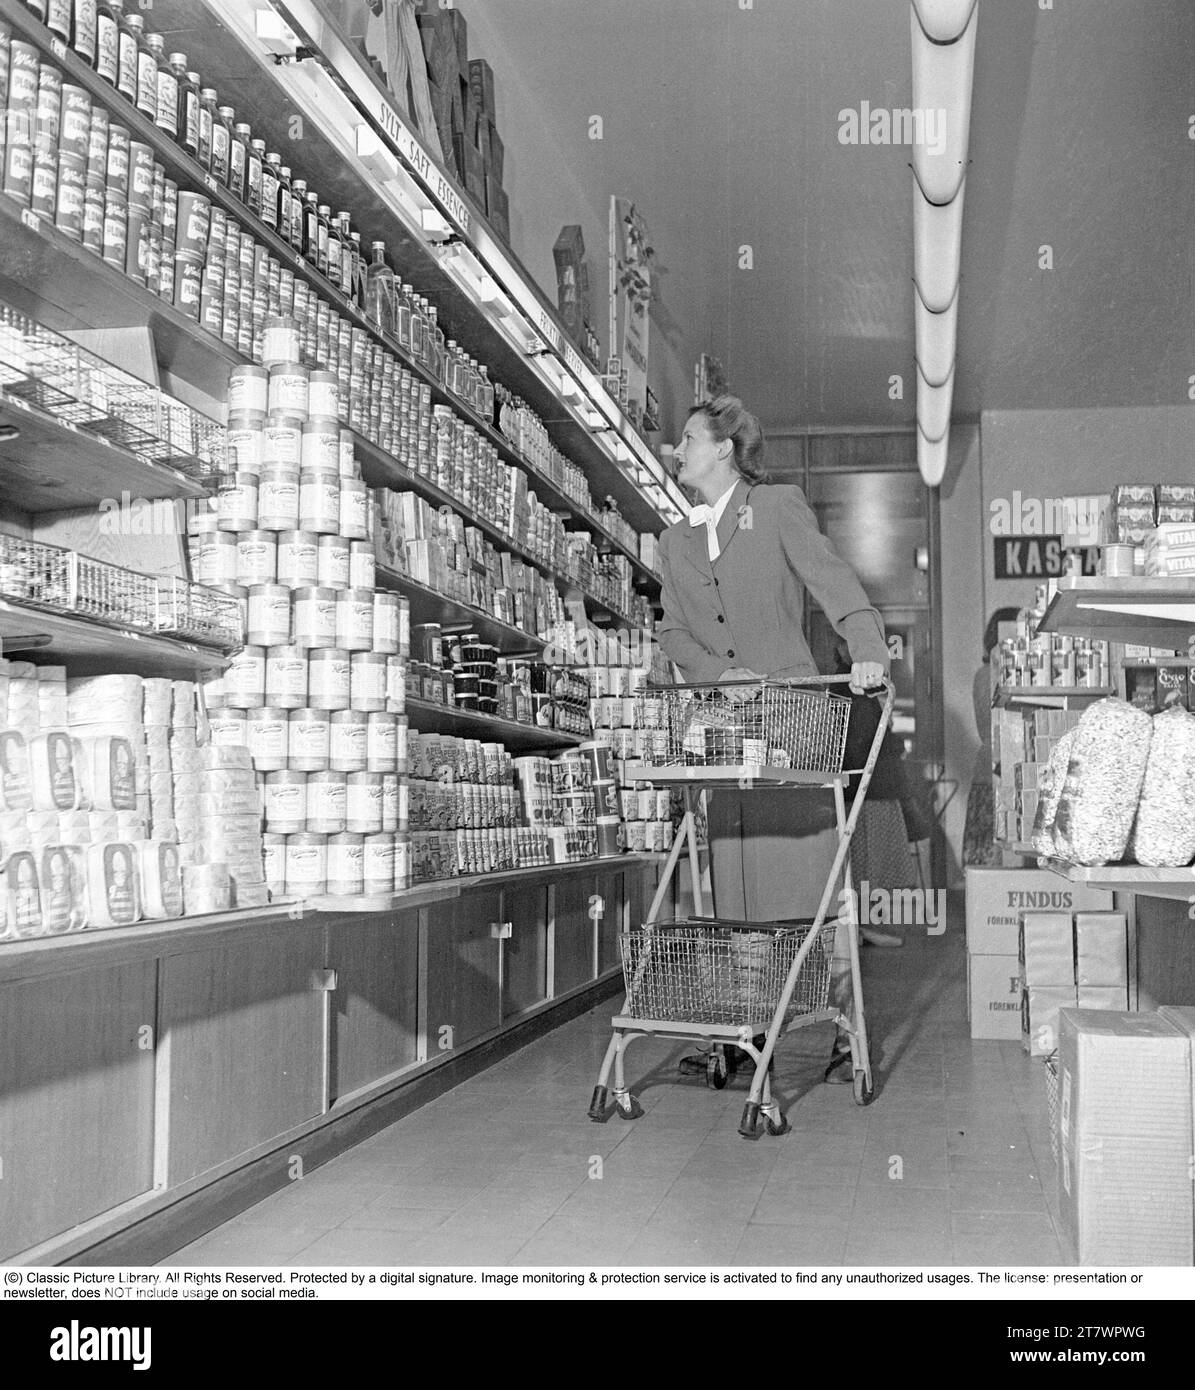 Shopping in den 1940er Jahren Eine Frau kauft in einem Selbstbedienungsladen ein. Sowohl die Idee des Self-Service als auch der Einkaufswagen kamen aus Amerika und zielten darauf ab, den Umsatz zu steigern. Der Kunde konnte sich die Lebensmittel aussuchen, in den Einkaufswagen legen und zur Kasse gehen. Zu dieser Zeit wurde diese Art des modernen Einkaufs in Schweden neu eingeführt. 1949. Kristoffersson Ref. AS47-6 Stockfoto